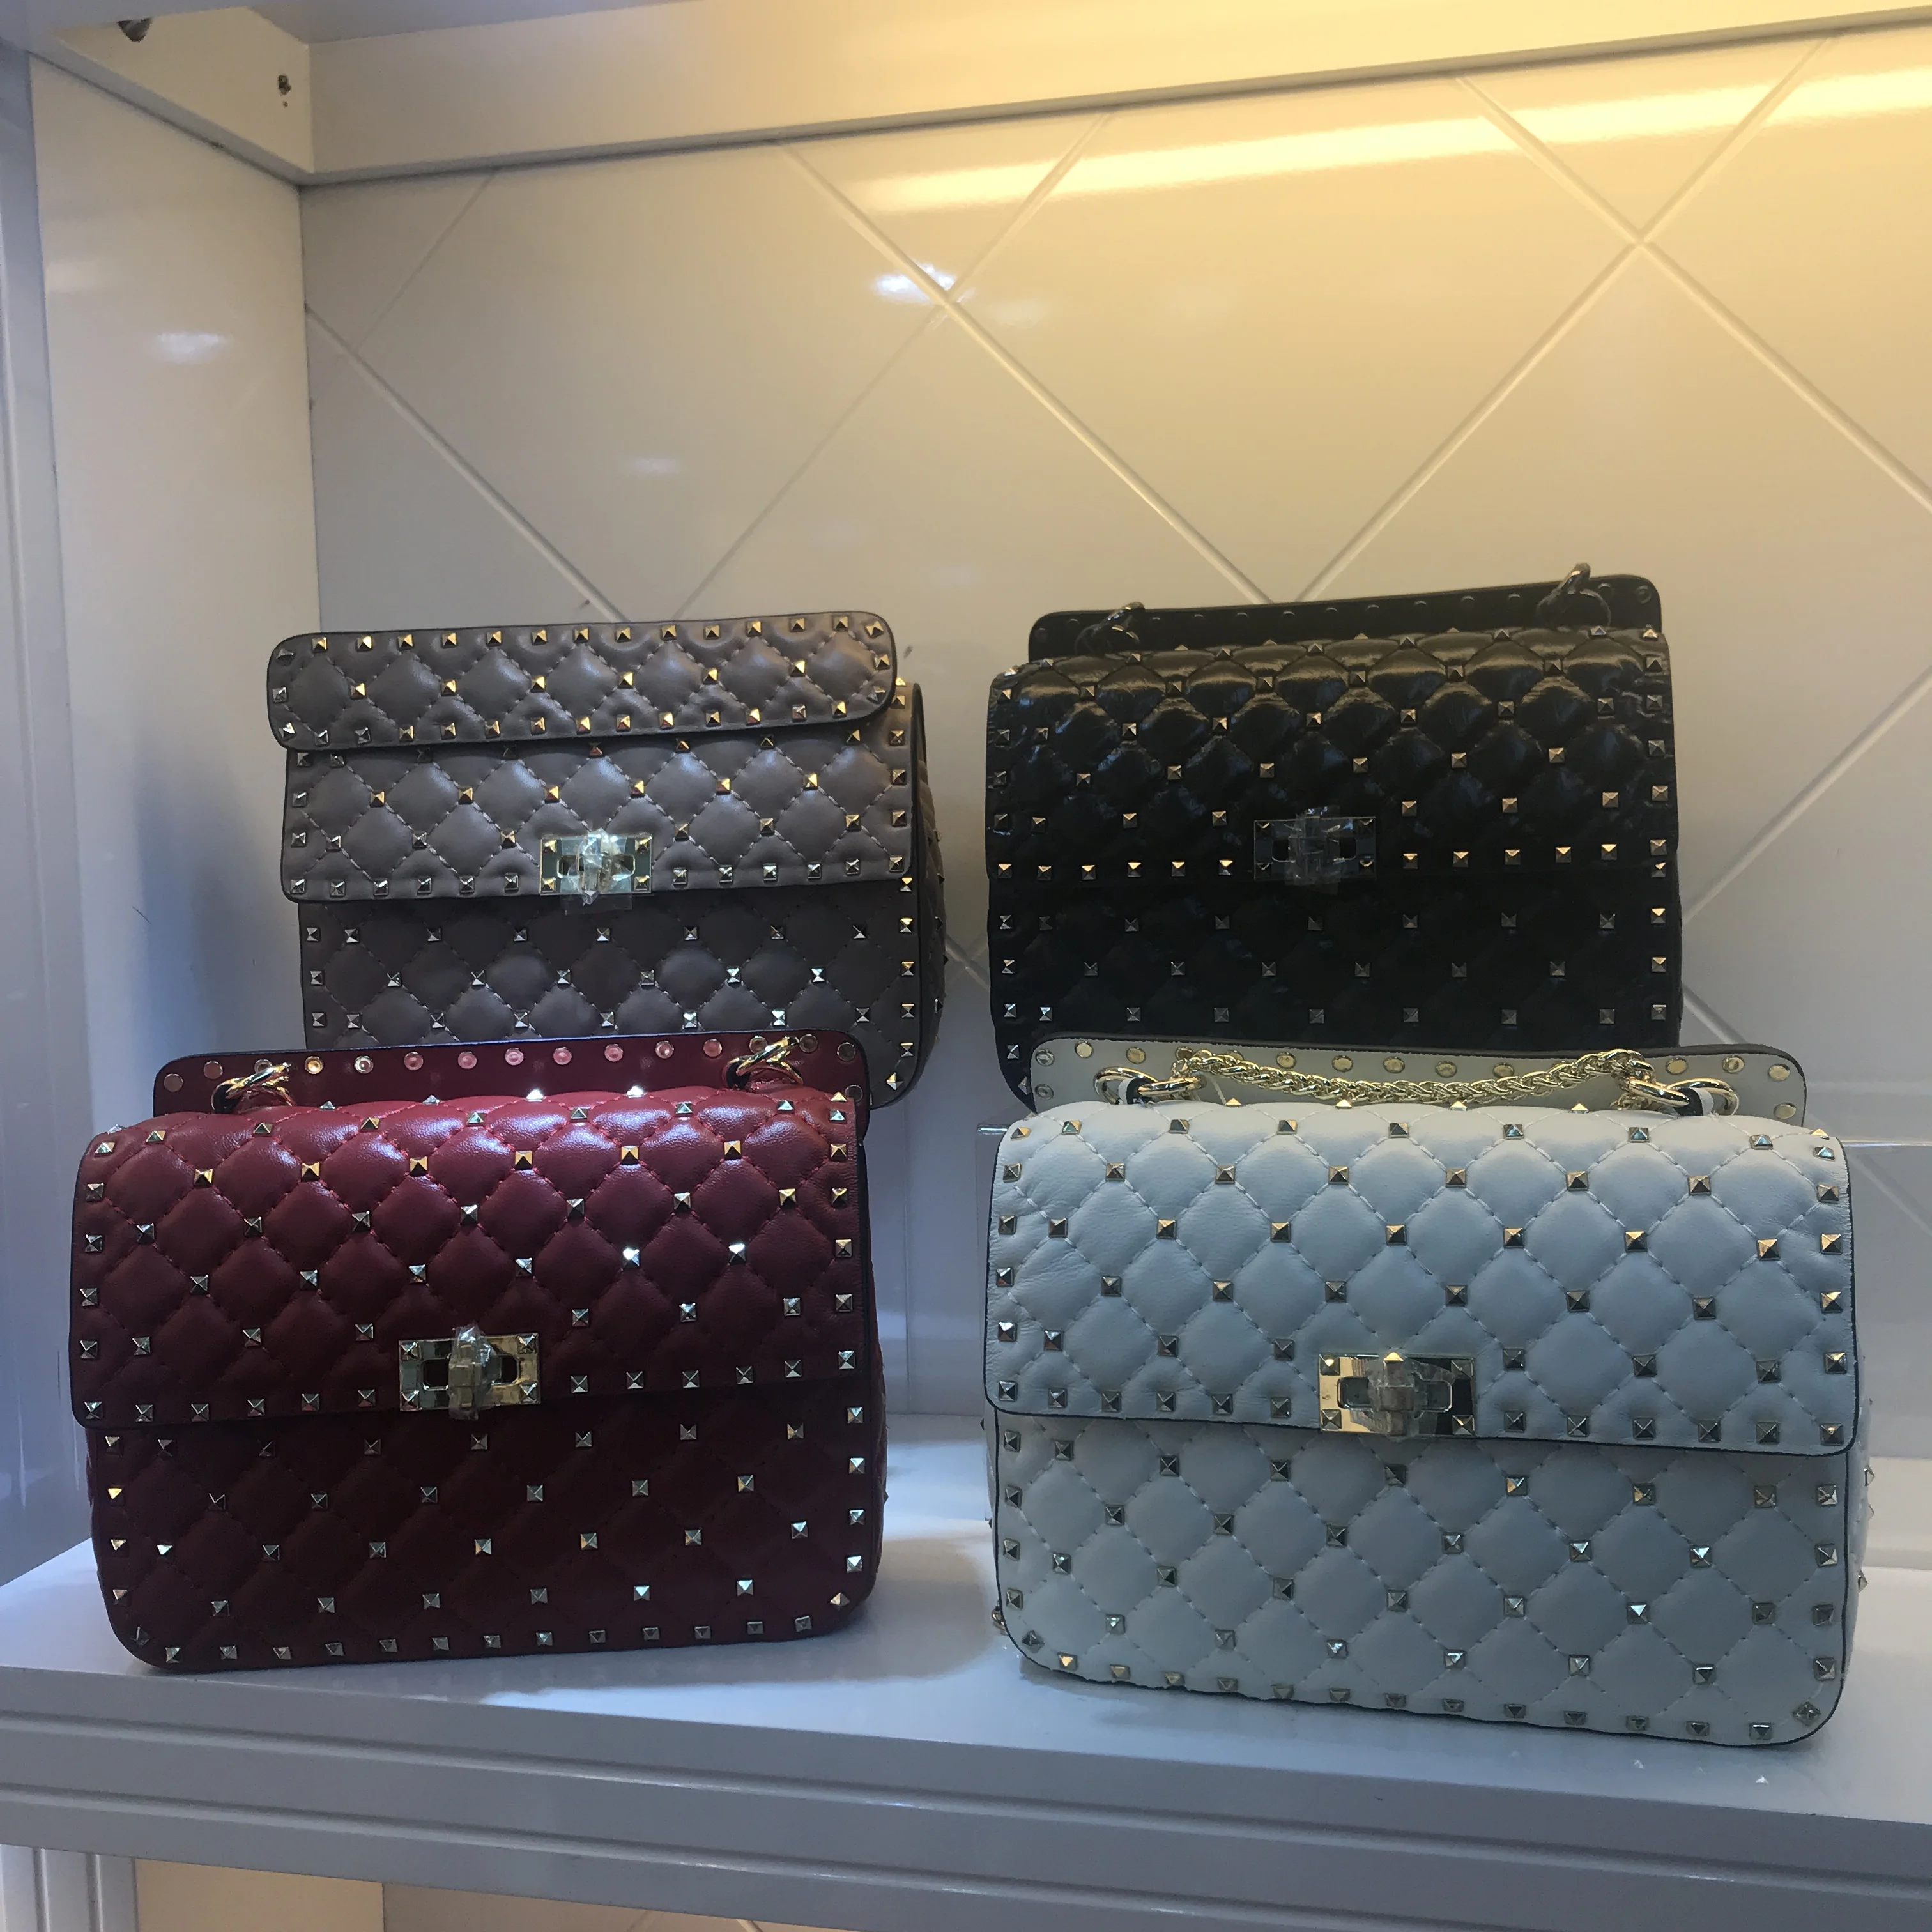 

Kafunila luxury handbags women bags designer bags for women 2019 genuine leather famous brand rivet crossbody bag bolsa feminina